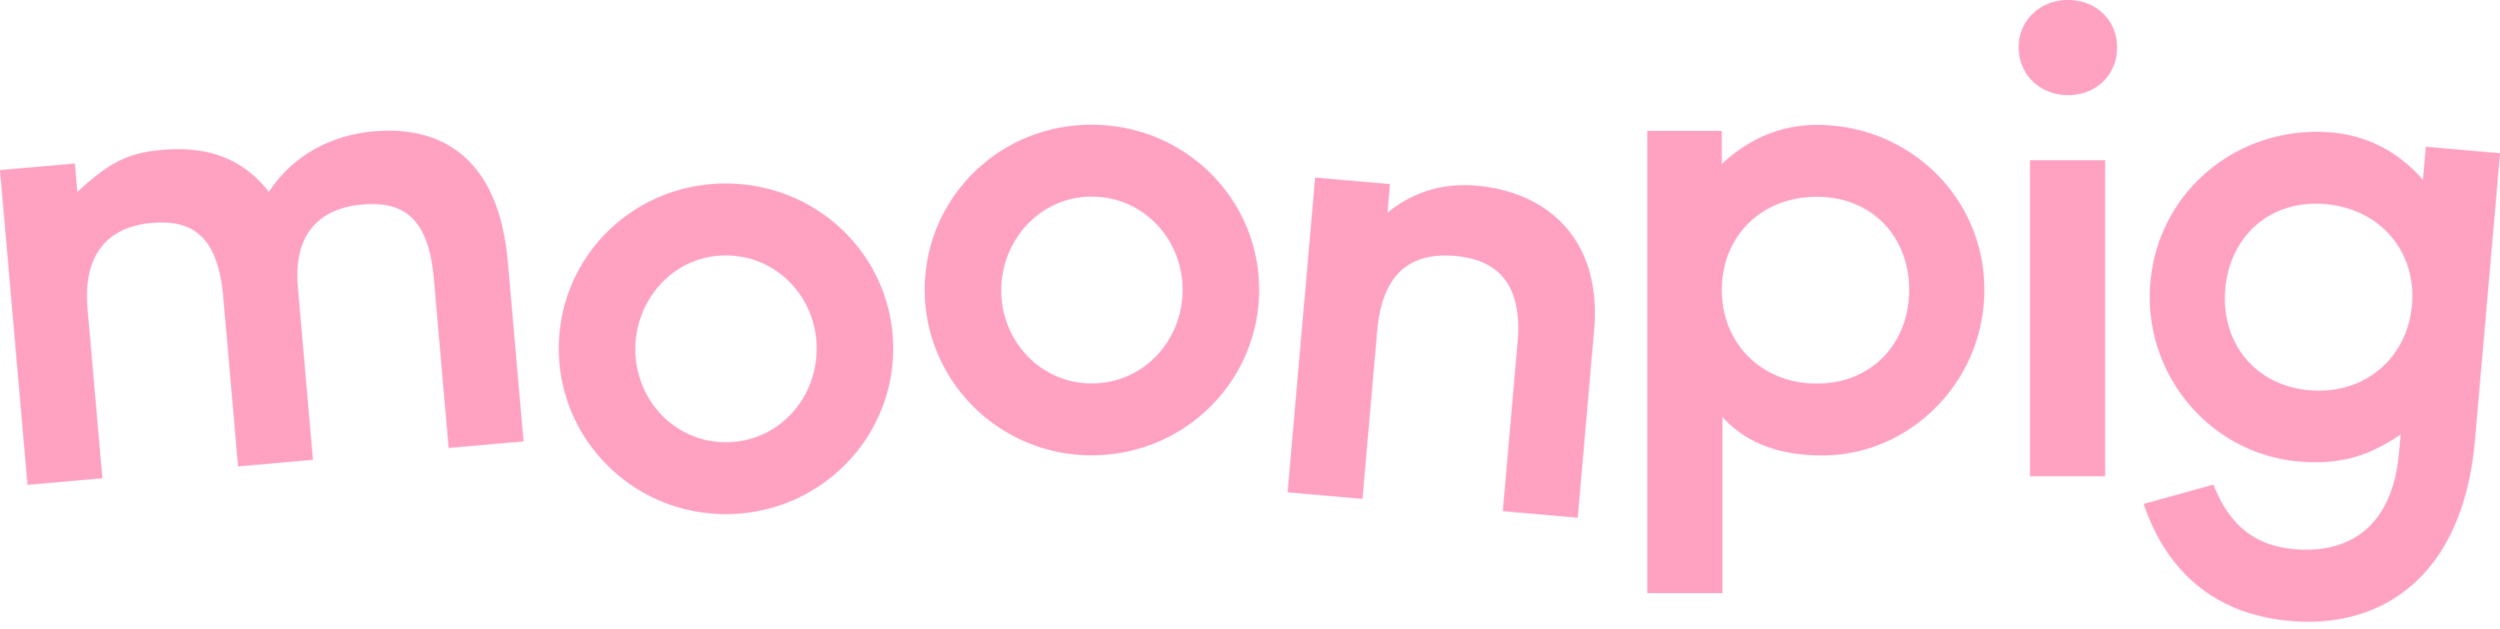 moonpig-logo.png